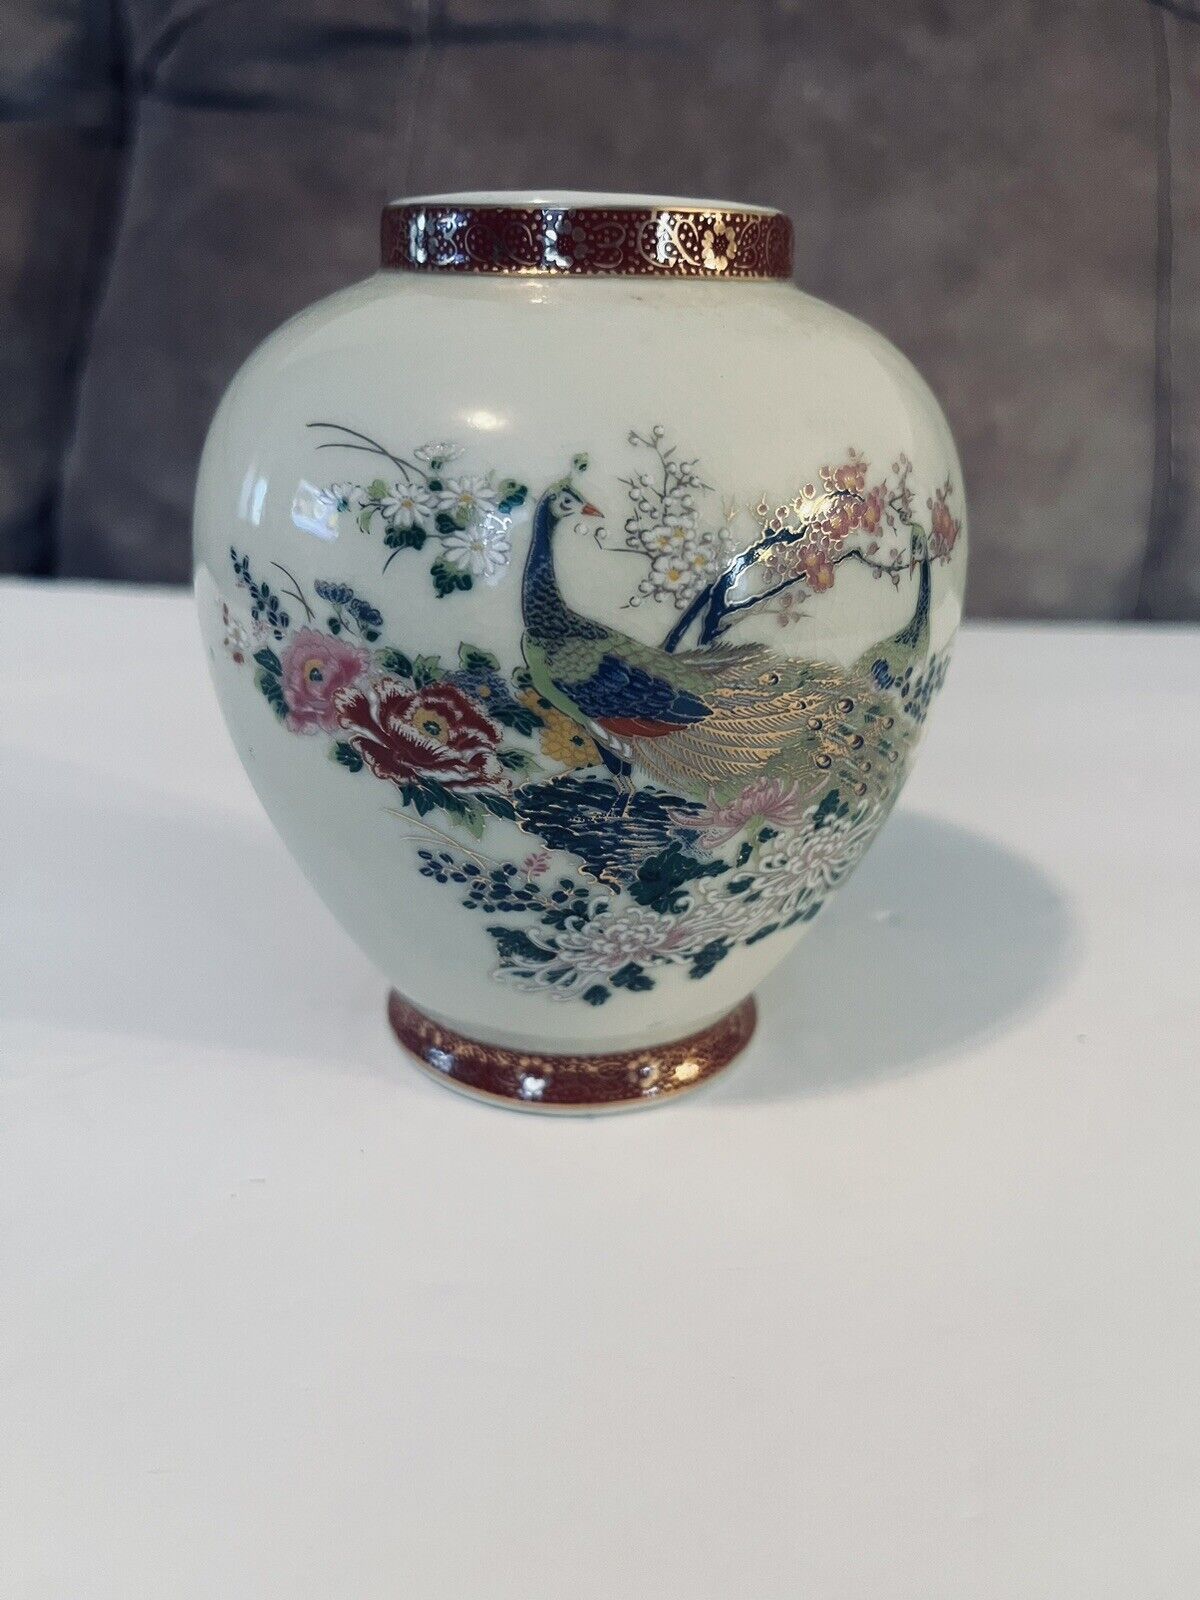 Vintage Satsuma Vase Peacocks Arnart Imports 1979 Japan Ginger Jar Porcelain